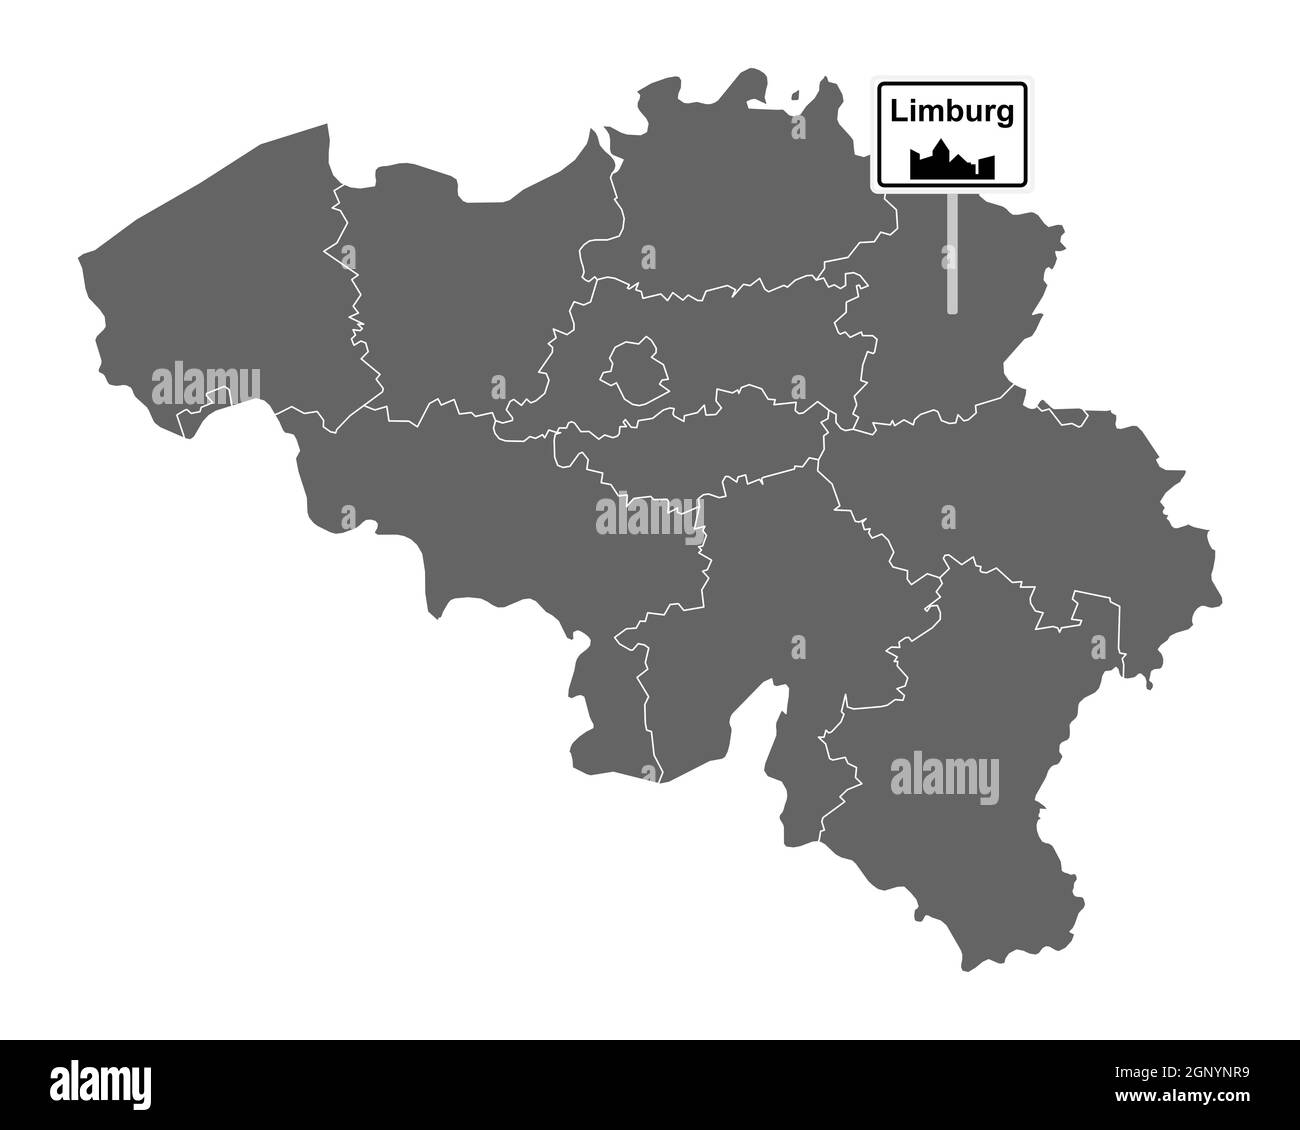 Landkarte von Belgien mit Orstsschild Limburg Foto Stock